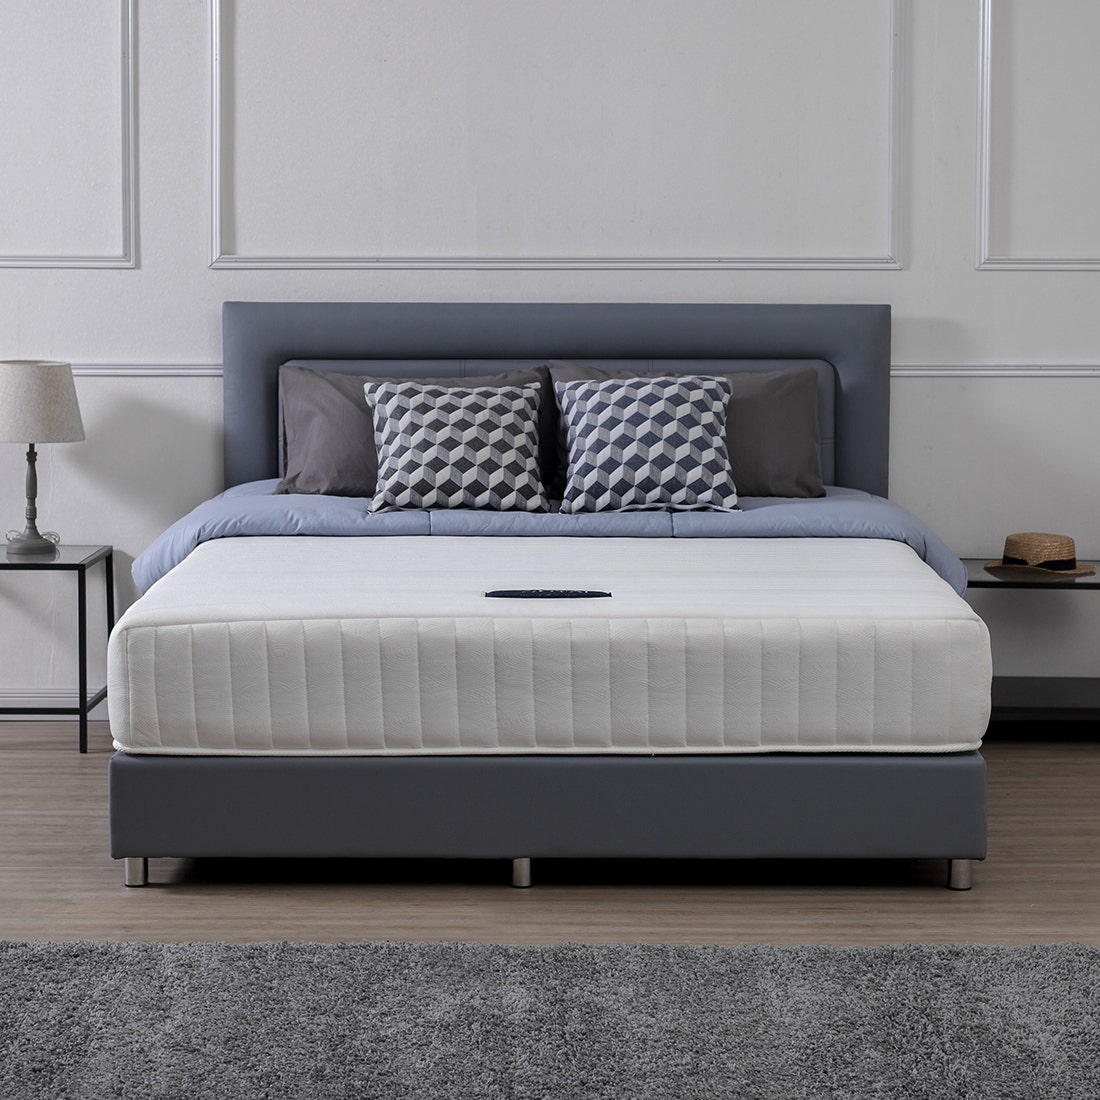 39001291-mattress-bedding-mattresses-spring-mattresses-31